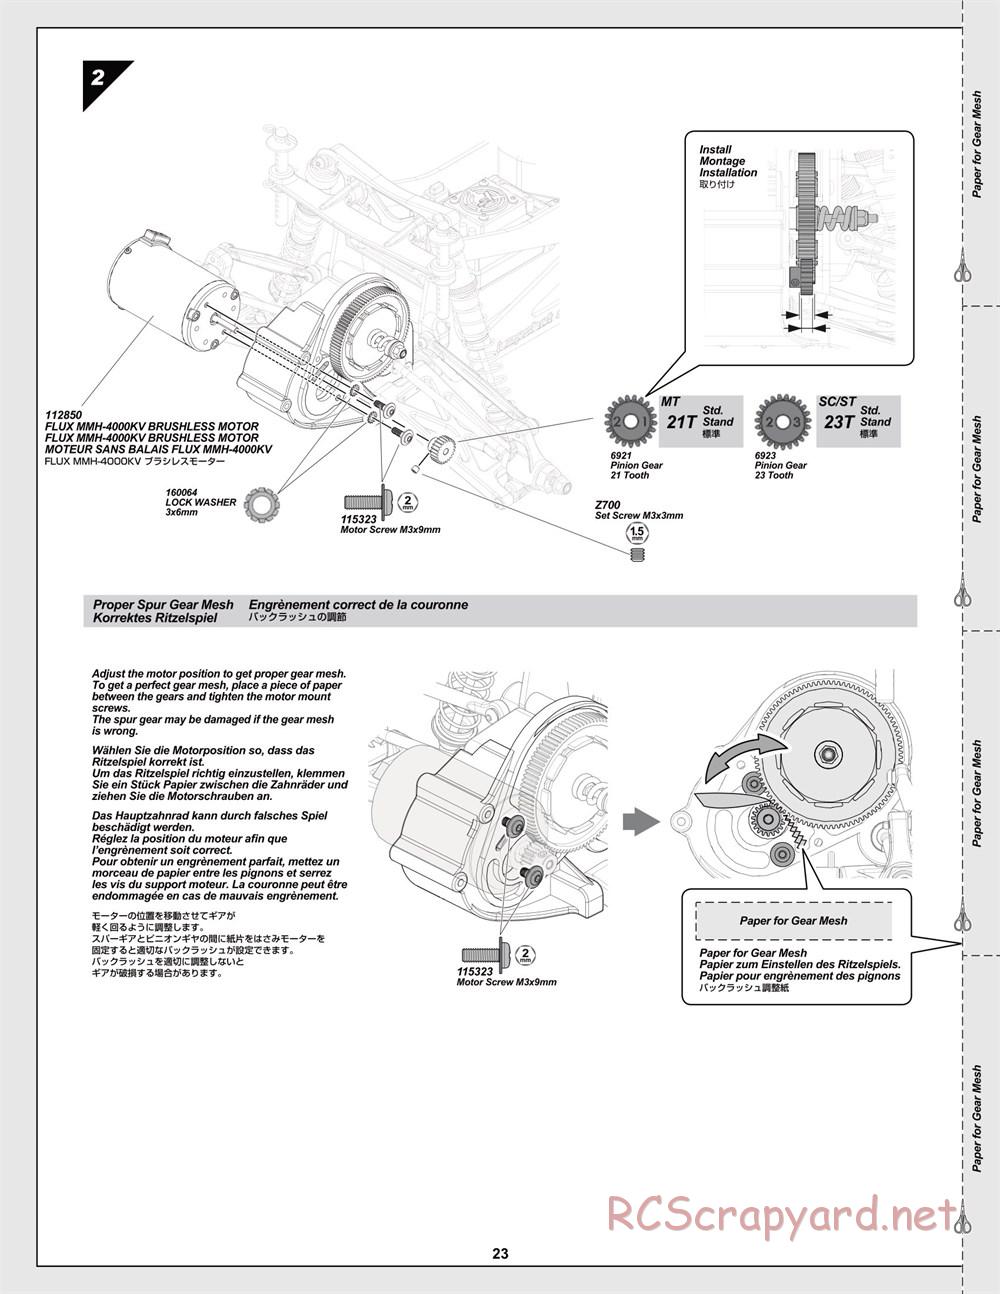 HPI - Jumpshot MT Flux - Manual - Page 23